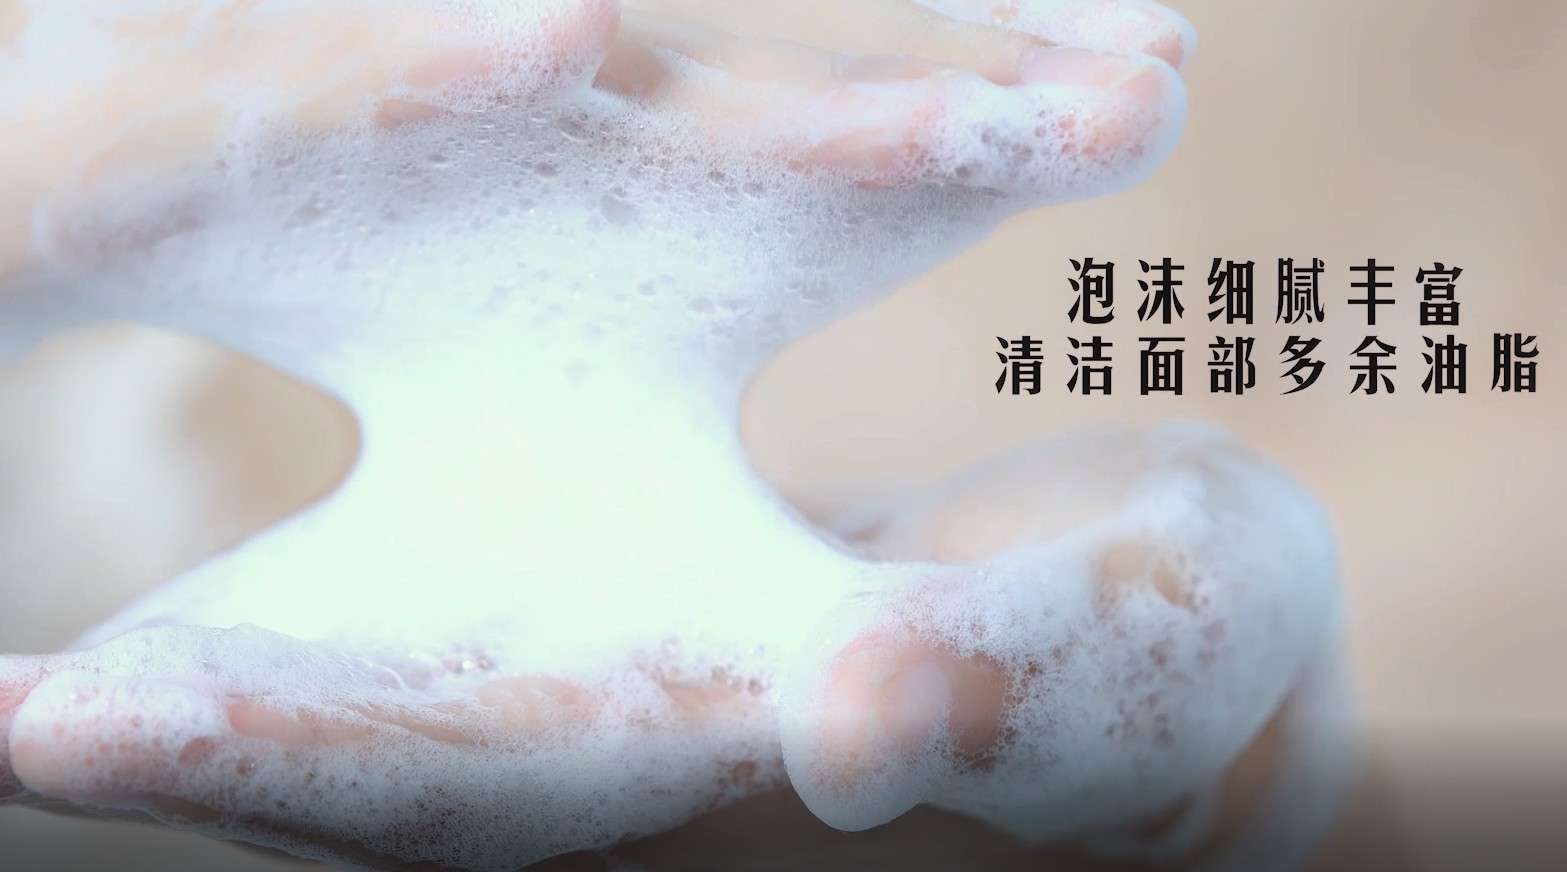 洗面奶产品视频